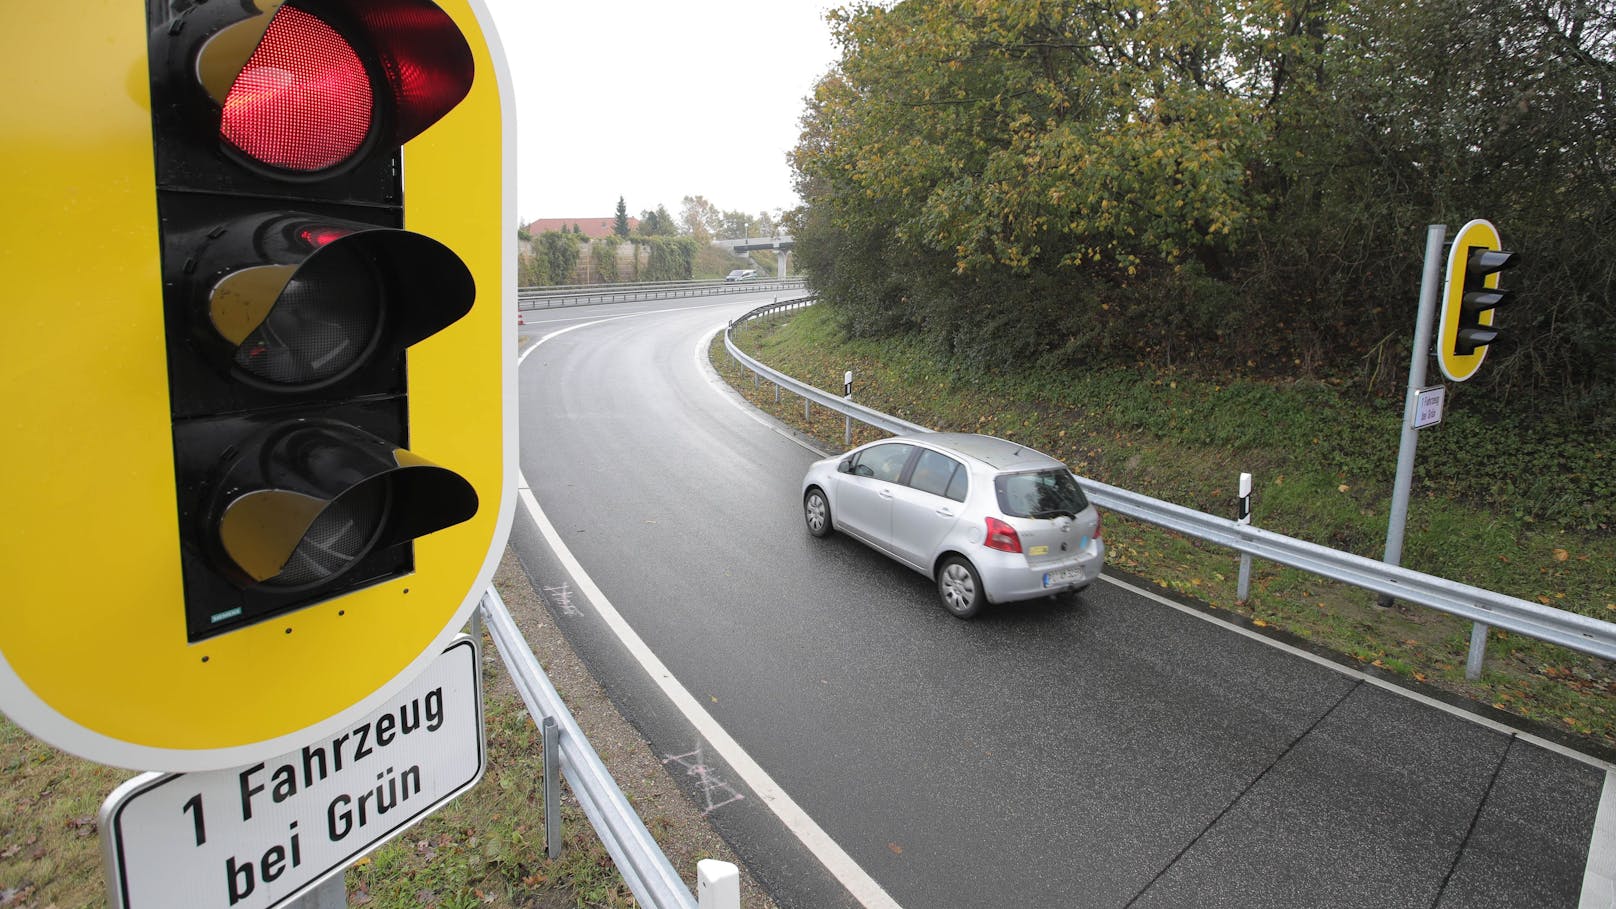 Eine Zuflussregelungsanlage samt Hinweisschild "1 Fahrzeug bei Grün" an einer Autobahnauffahrt in Deutschland, Archivbild 2017.